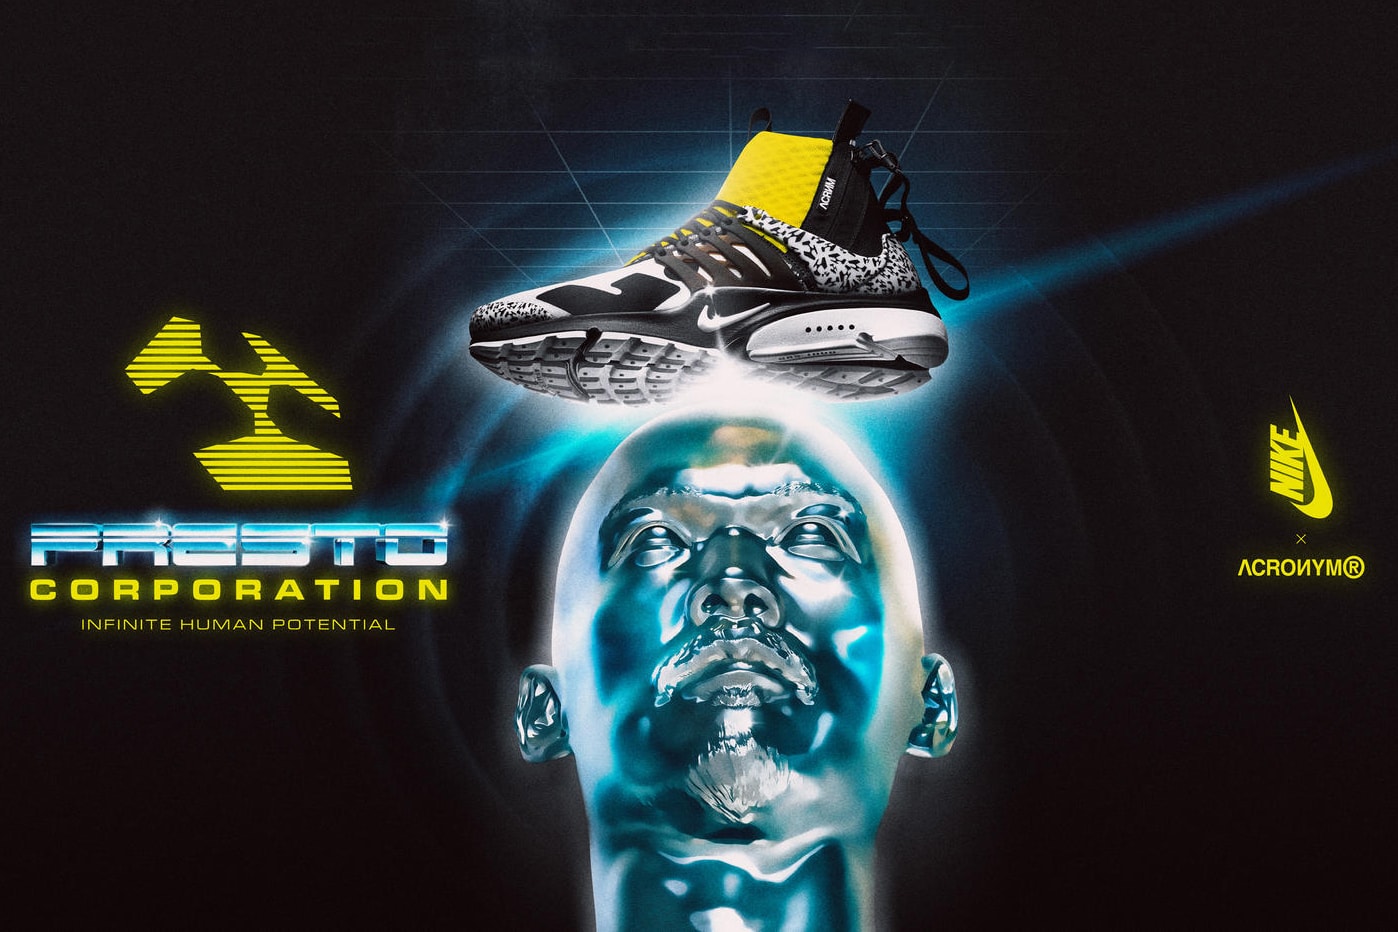 Nike Air Presto Mid x ACRONYM® 全新系列正式發佈